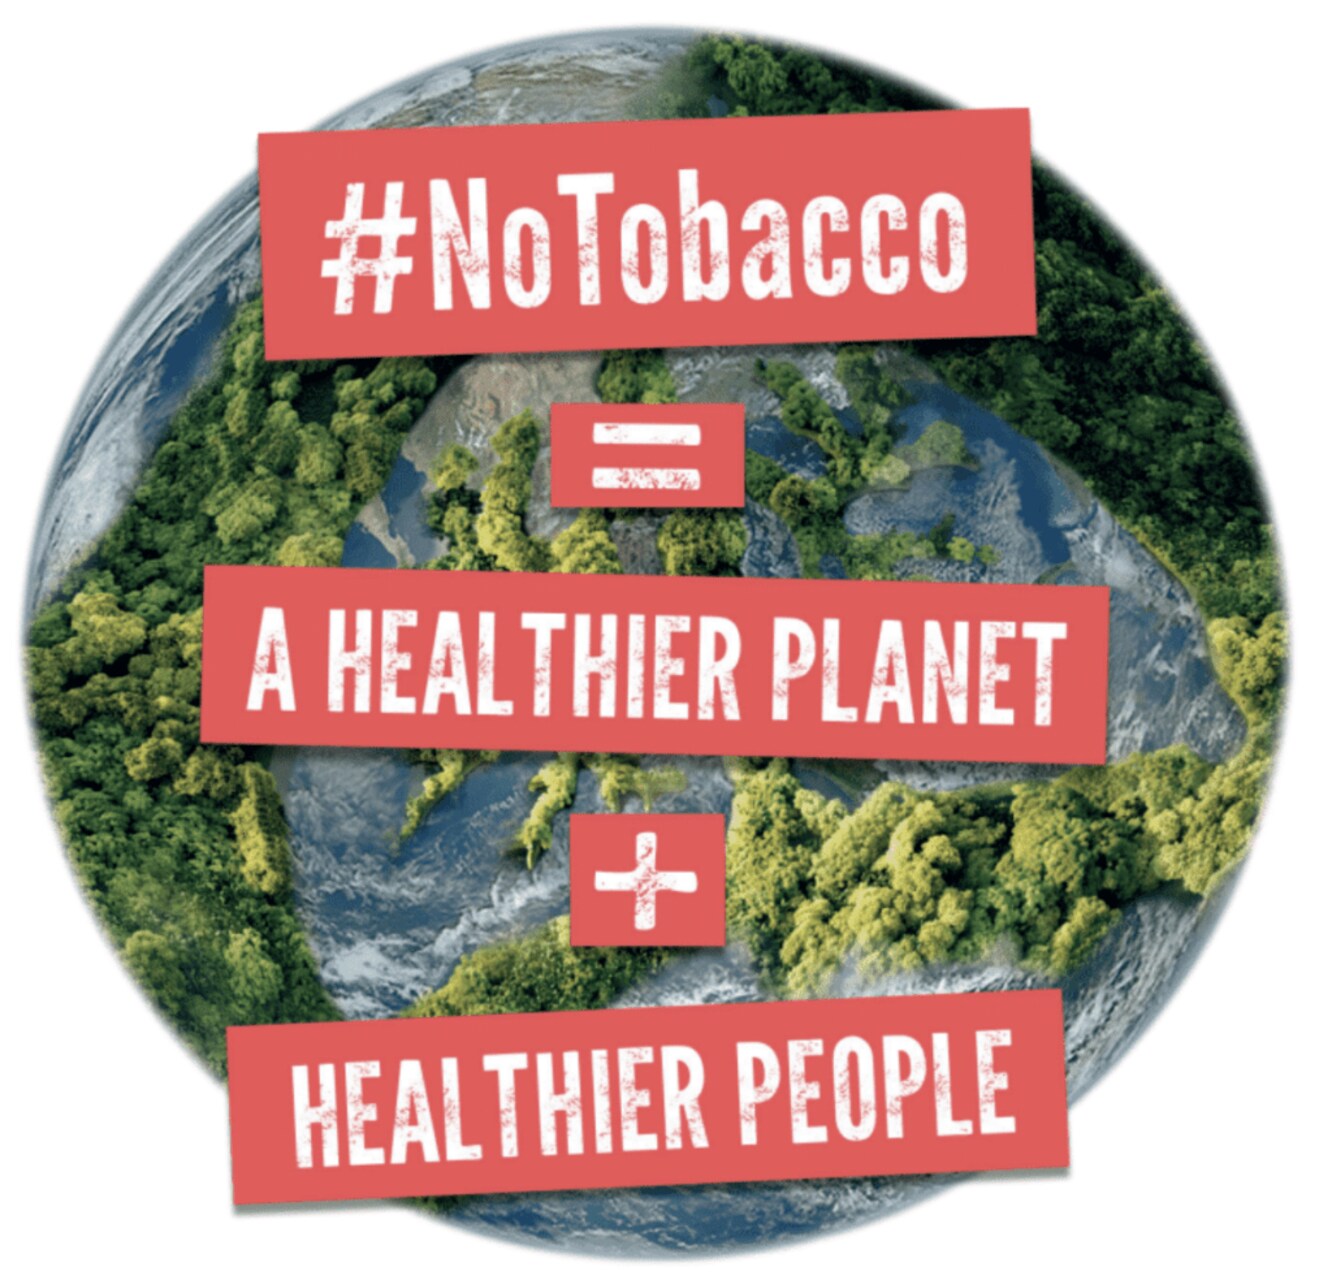 तम्बाकू: धूम्रपान अभी भी हमारे ग्रह को जहरीला बना रहा है, लेकिन इस घटना से निपटने के लिए वैश्विक उपाय काम कर रहे हैं